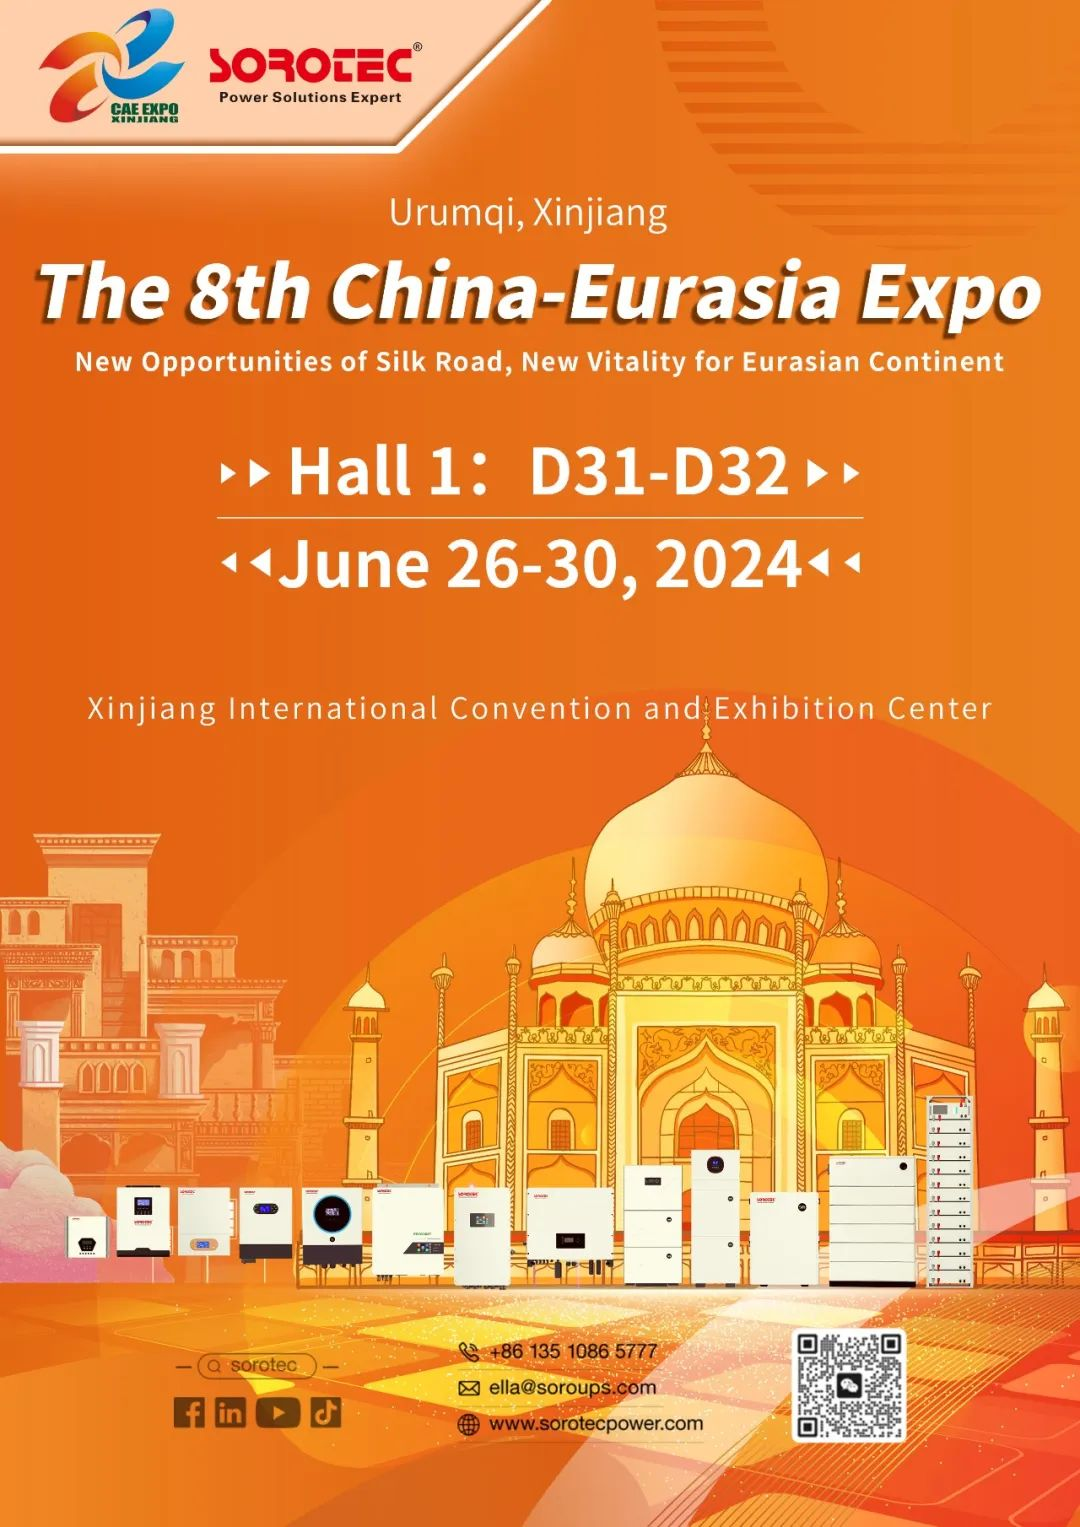 תערוכה סין-אירואסיה: פלטפורמה מרכזית לשיתוף פעולה רב-צדדי ופיתוח "חגורה ודרך".